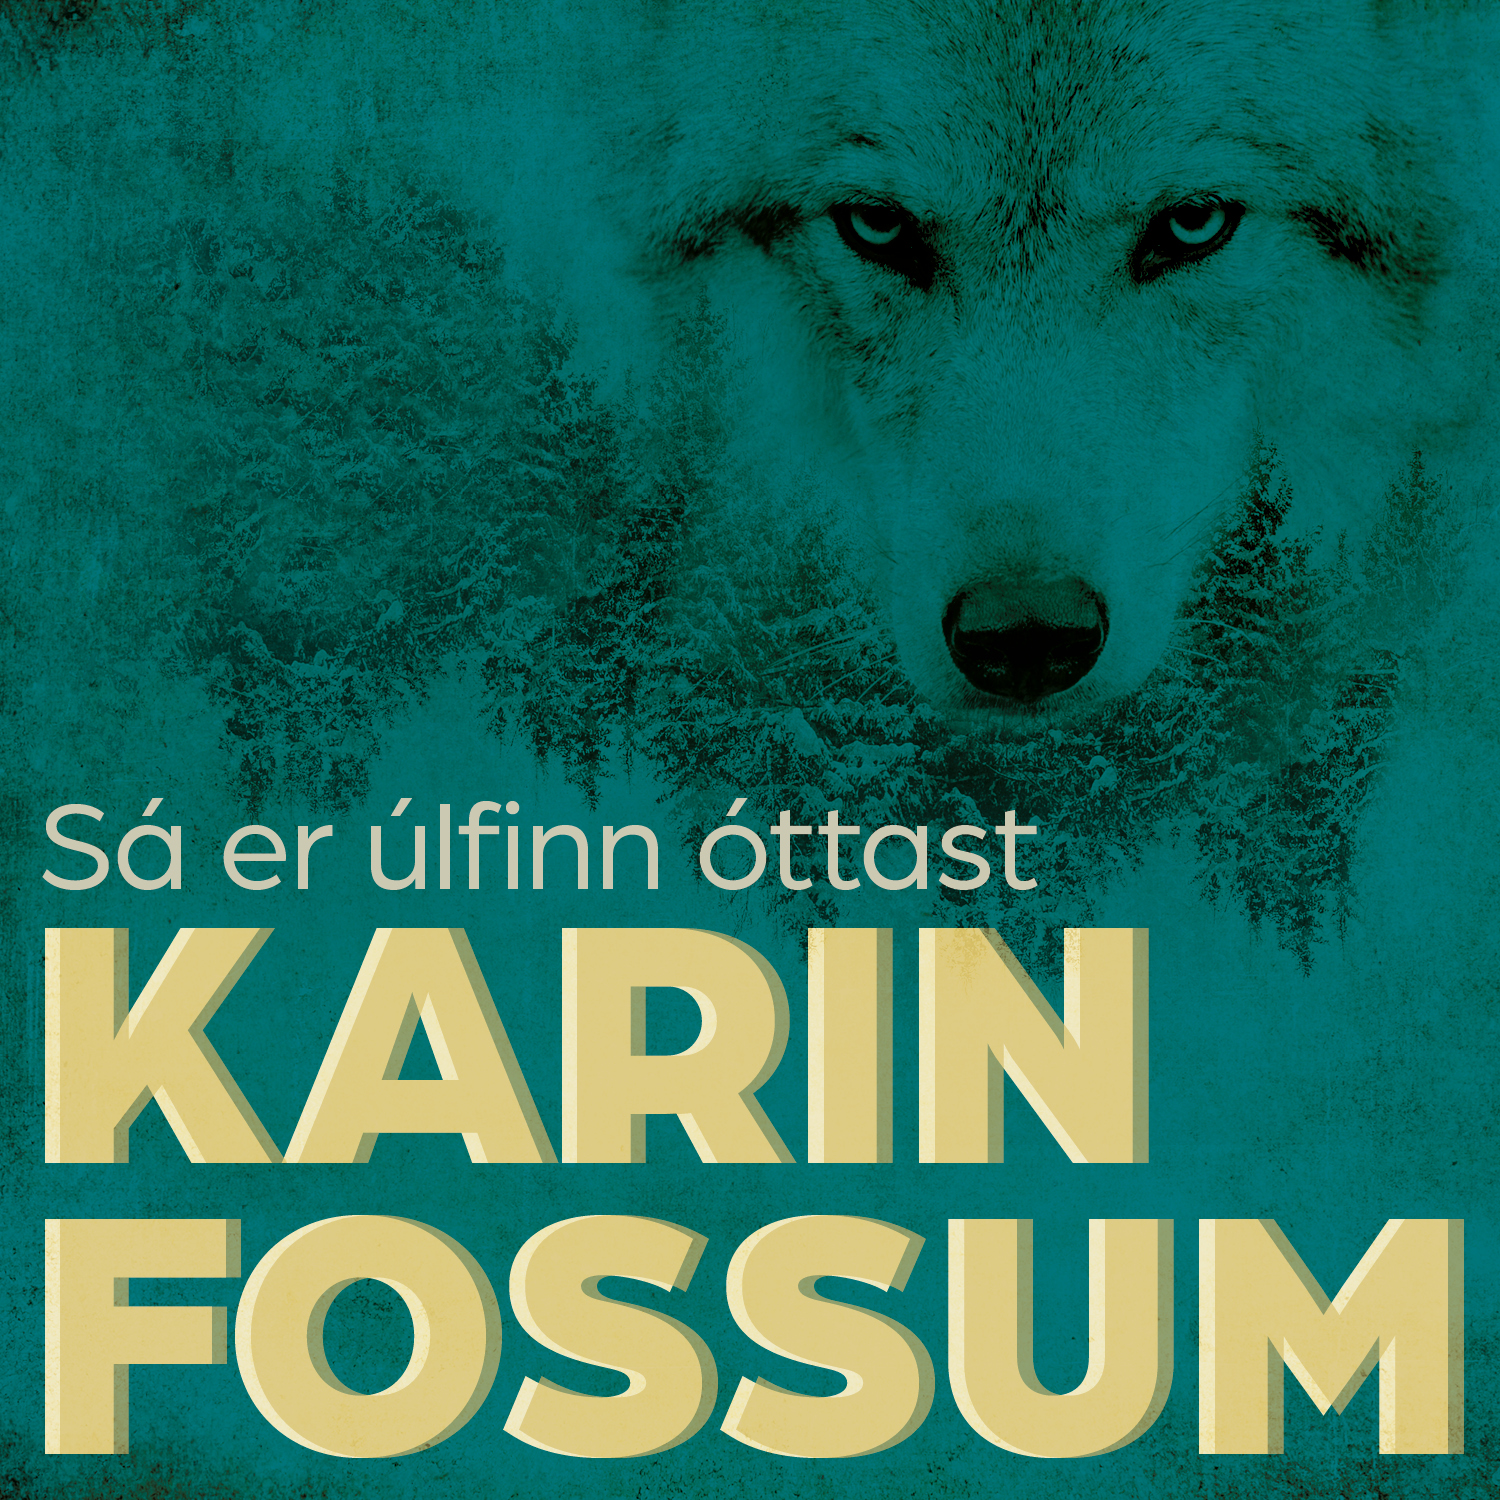 Karin_Fossum_Sa_er_ulfinn_ottast_1500x1500